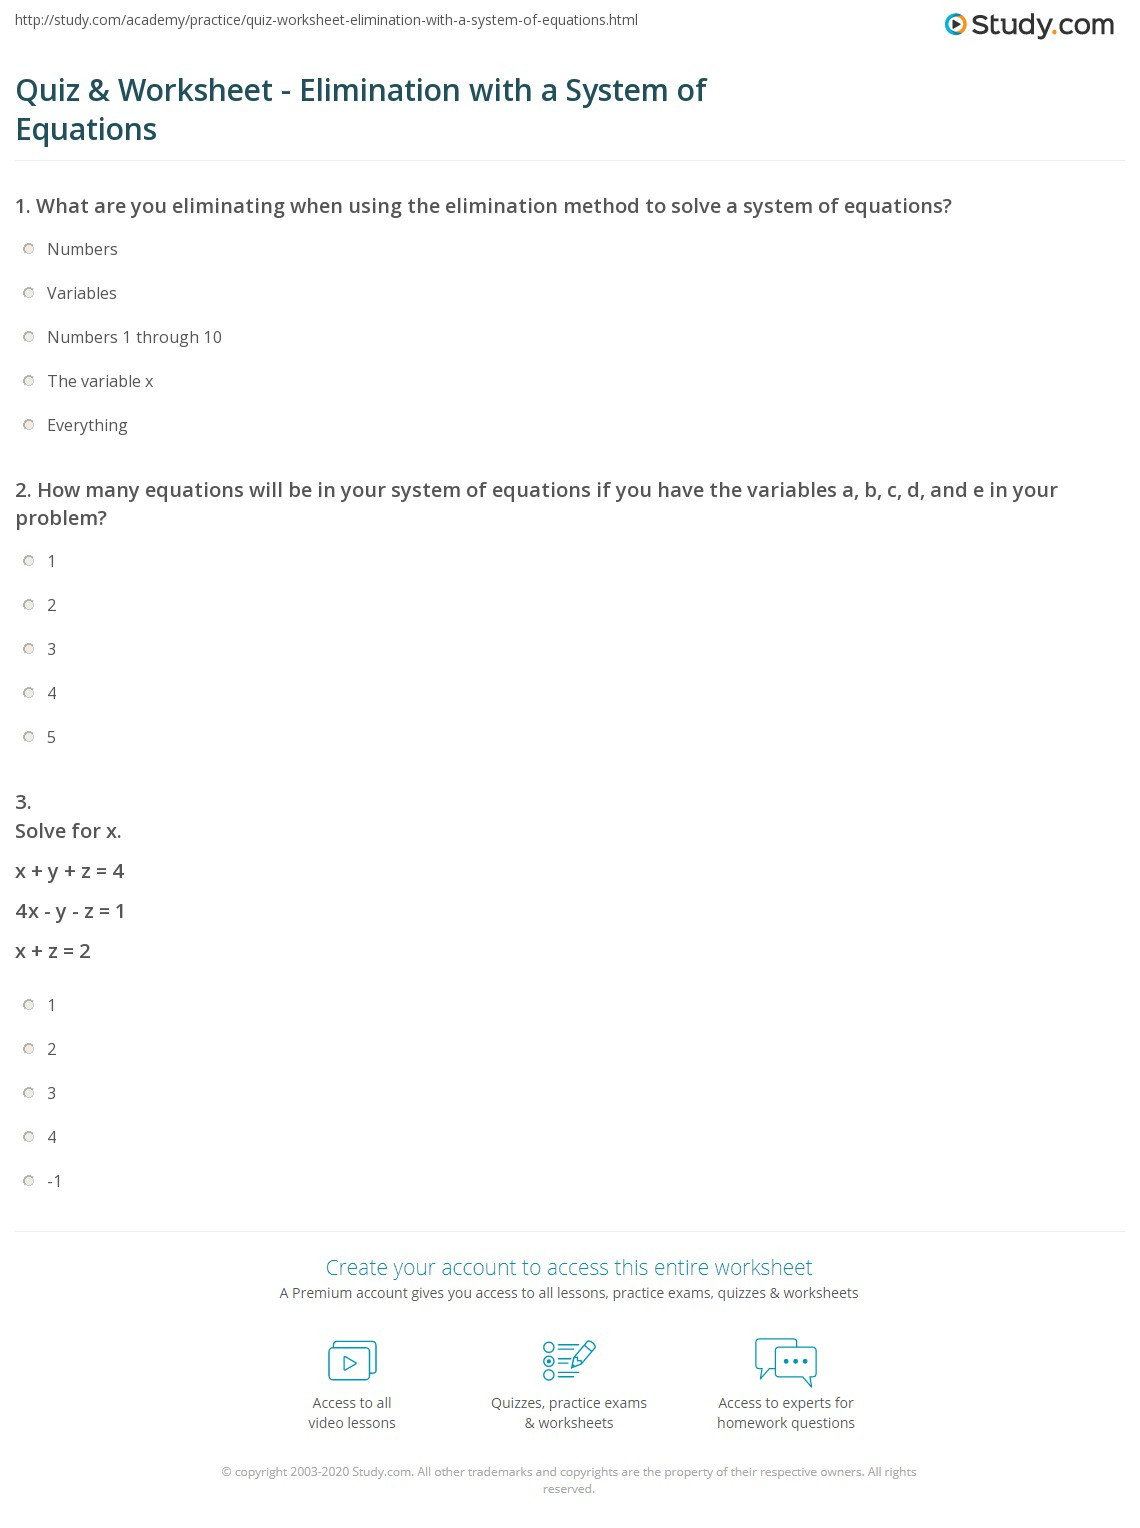 Solving System by Elimination Worksheet Quiz &amp; Worksheet Elimination with A System Of Equations